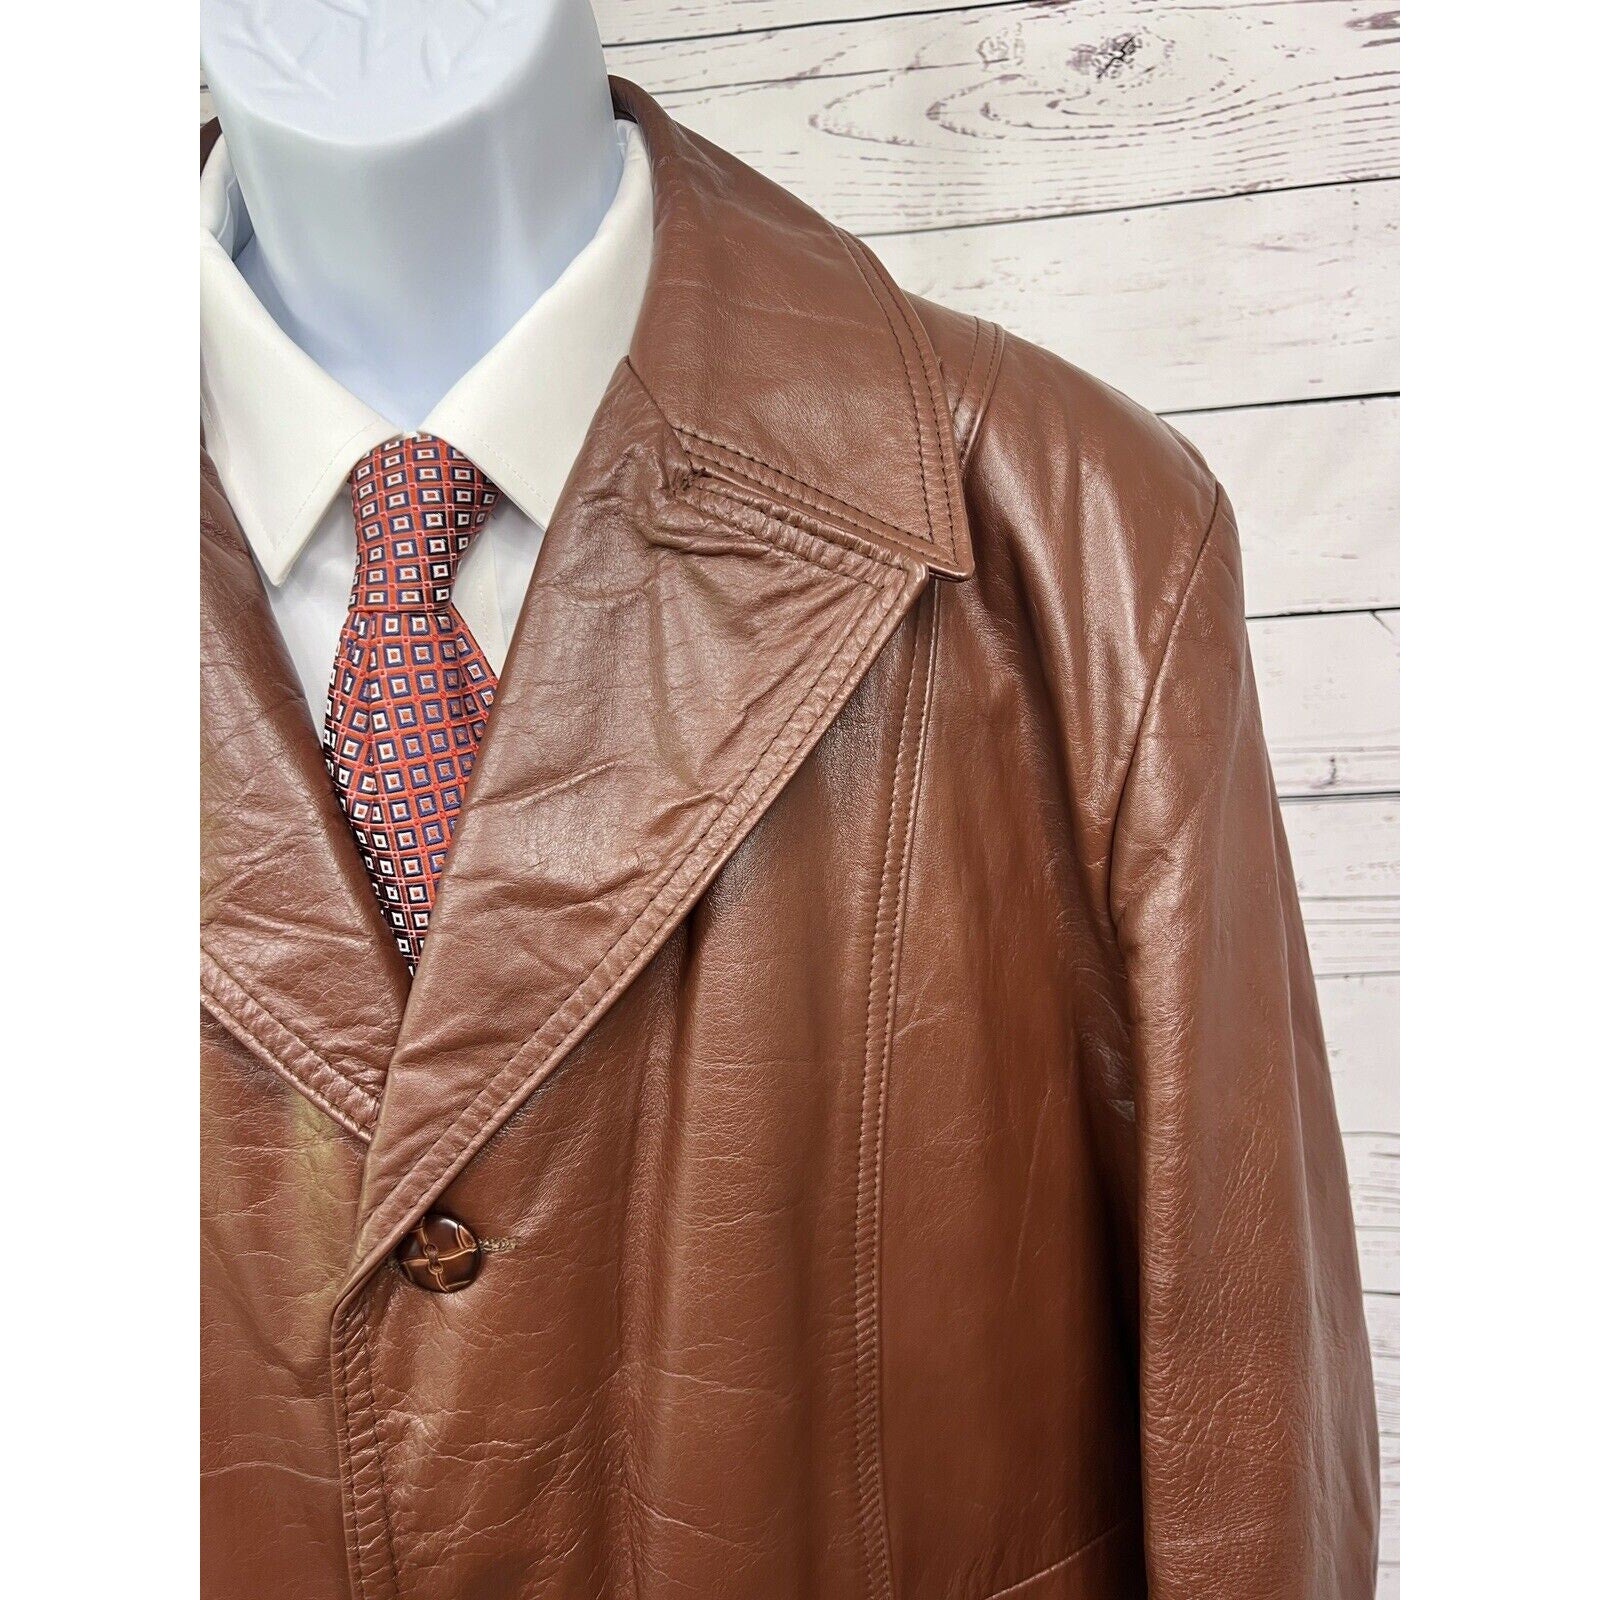 Vintage Leather Jacket Mens 46R 60s 70s Retro Zip Out Liner Coat Jacket Gangster